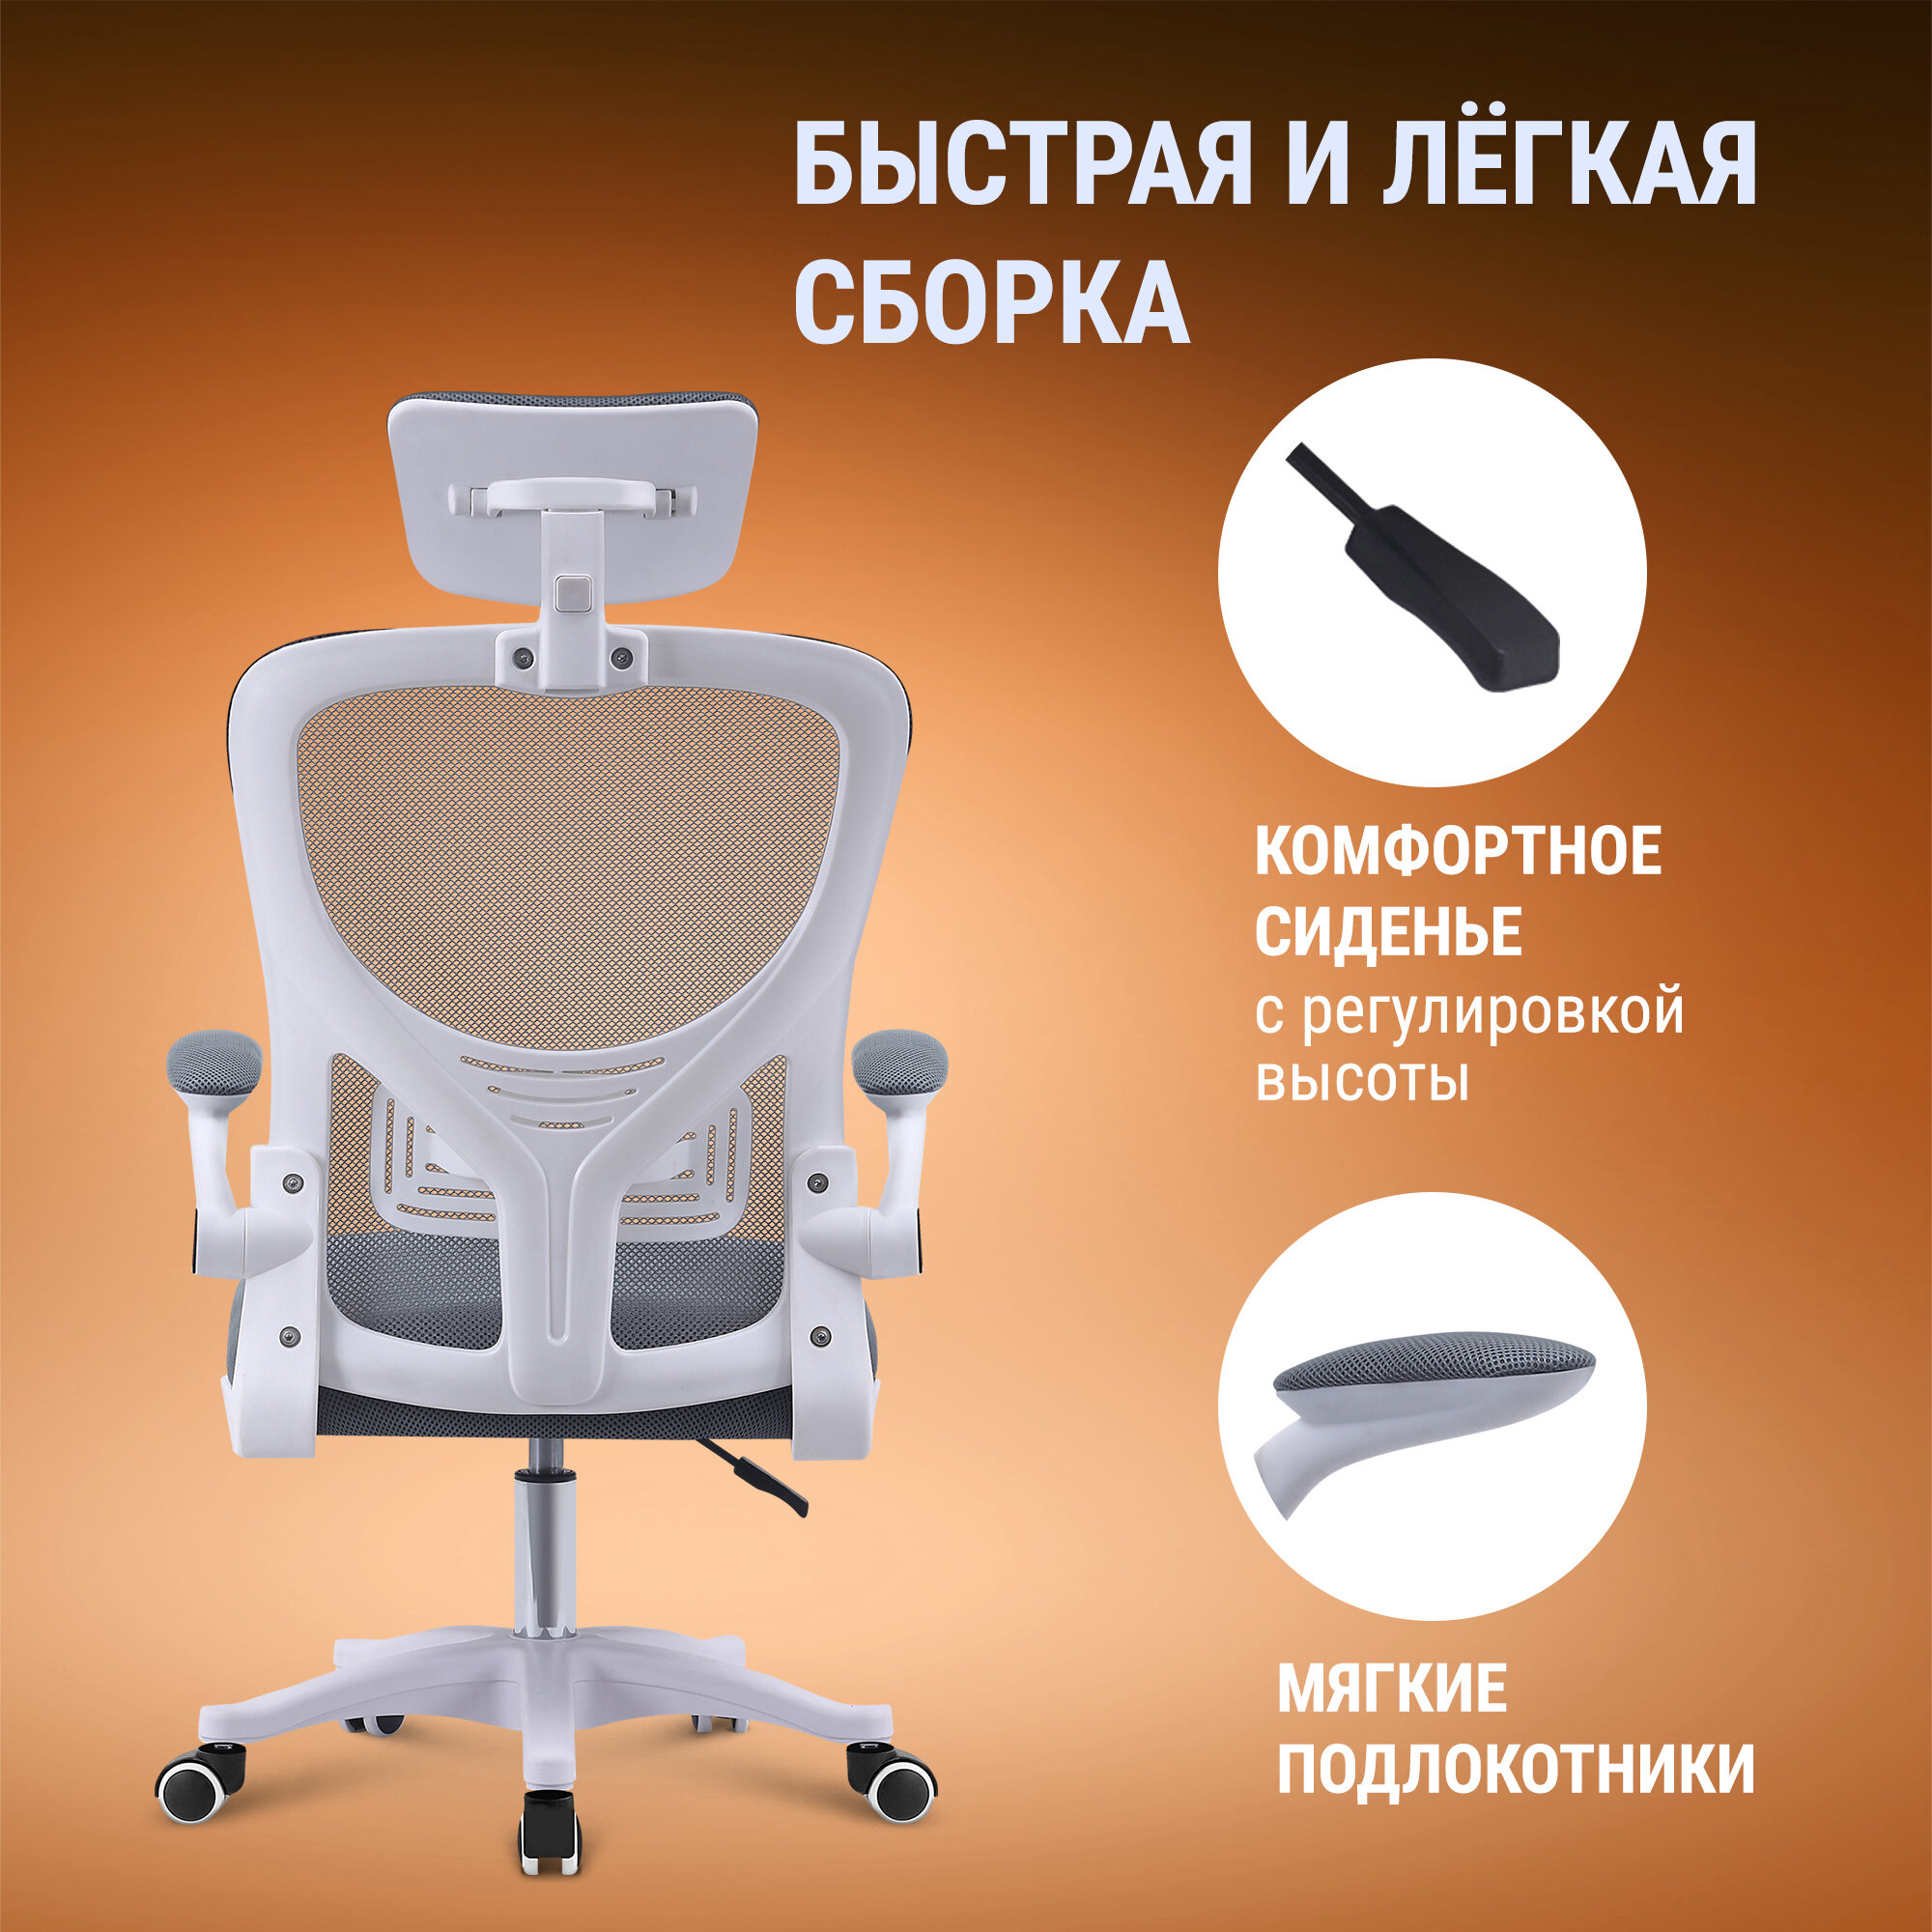 Кресло офисное / кресло компьютерное Defender Creator